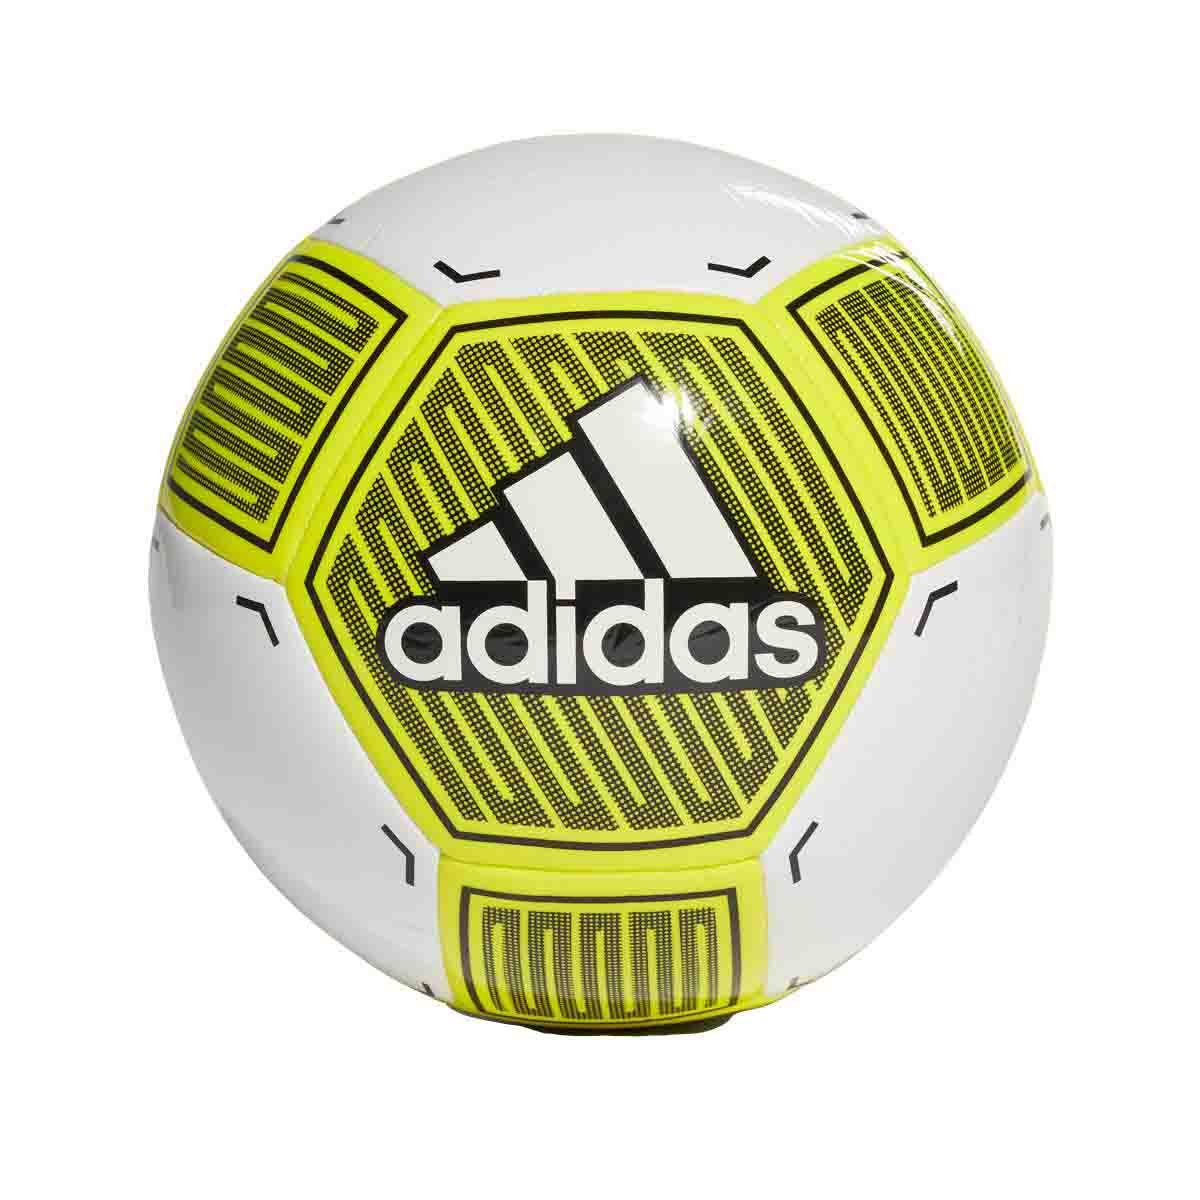 Balon Soccer Adidas-Caballero